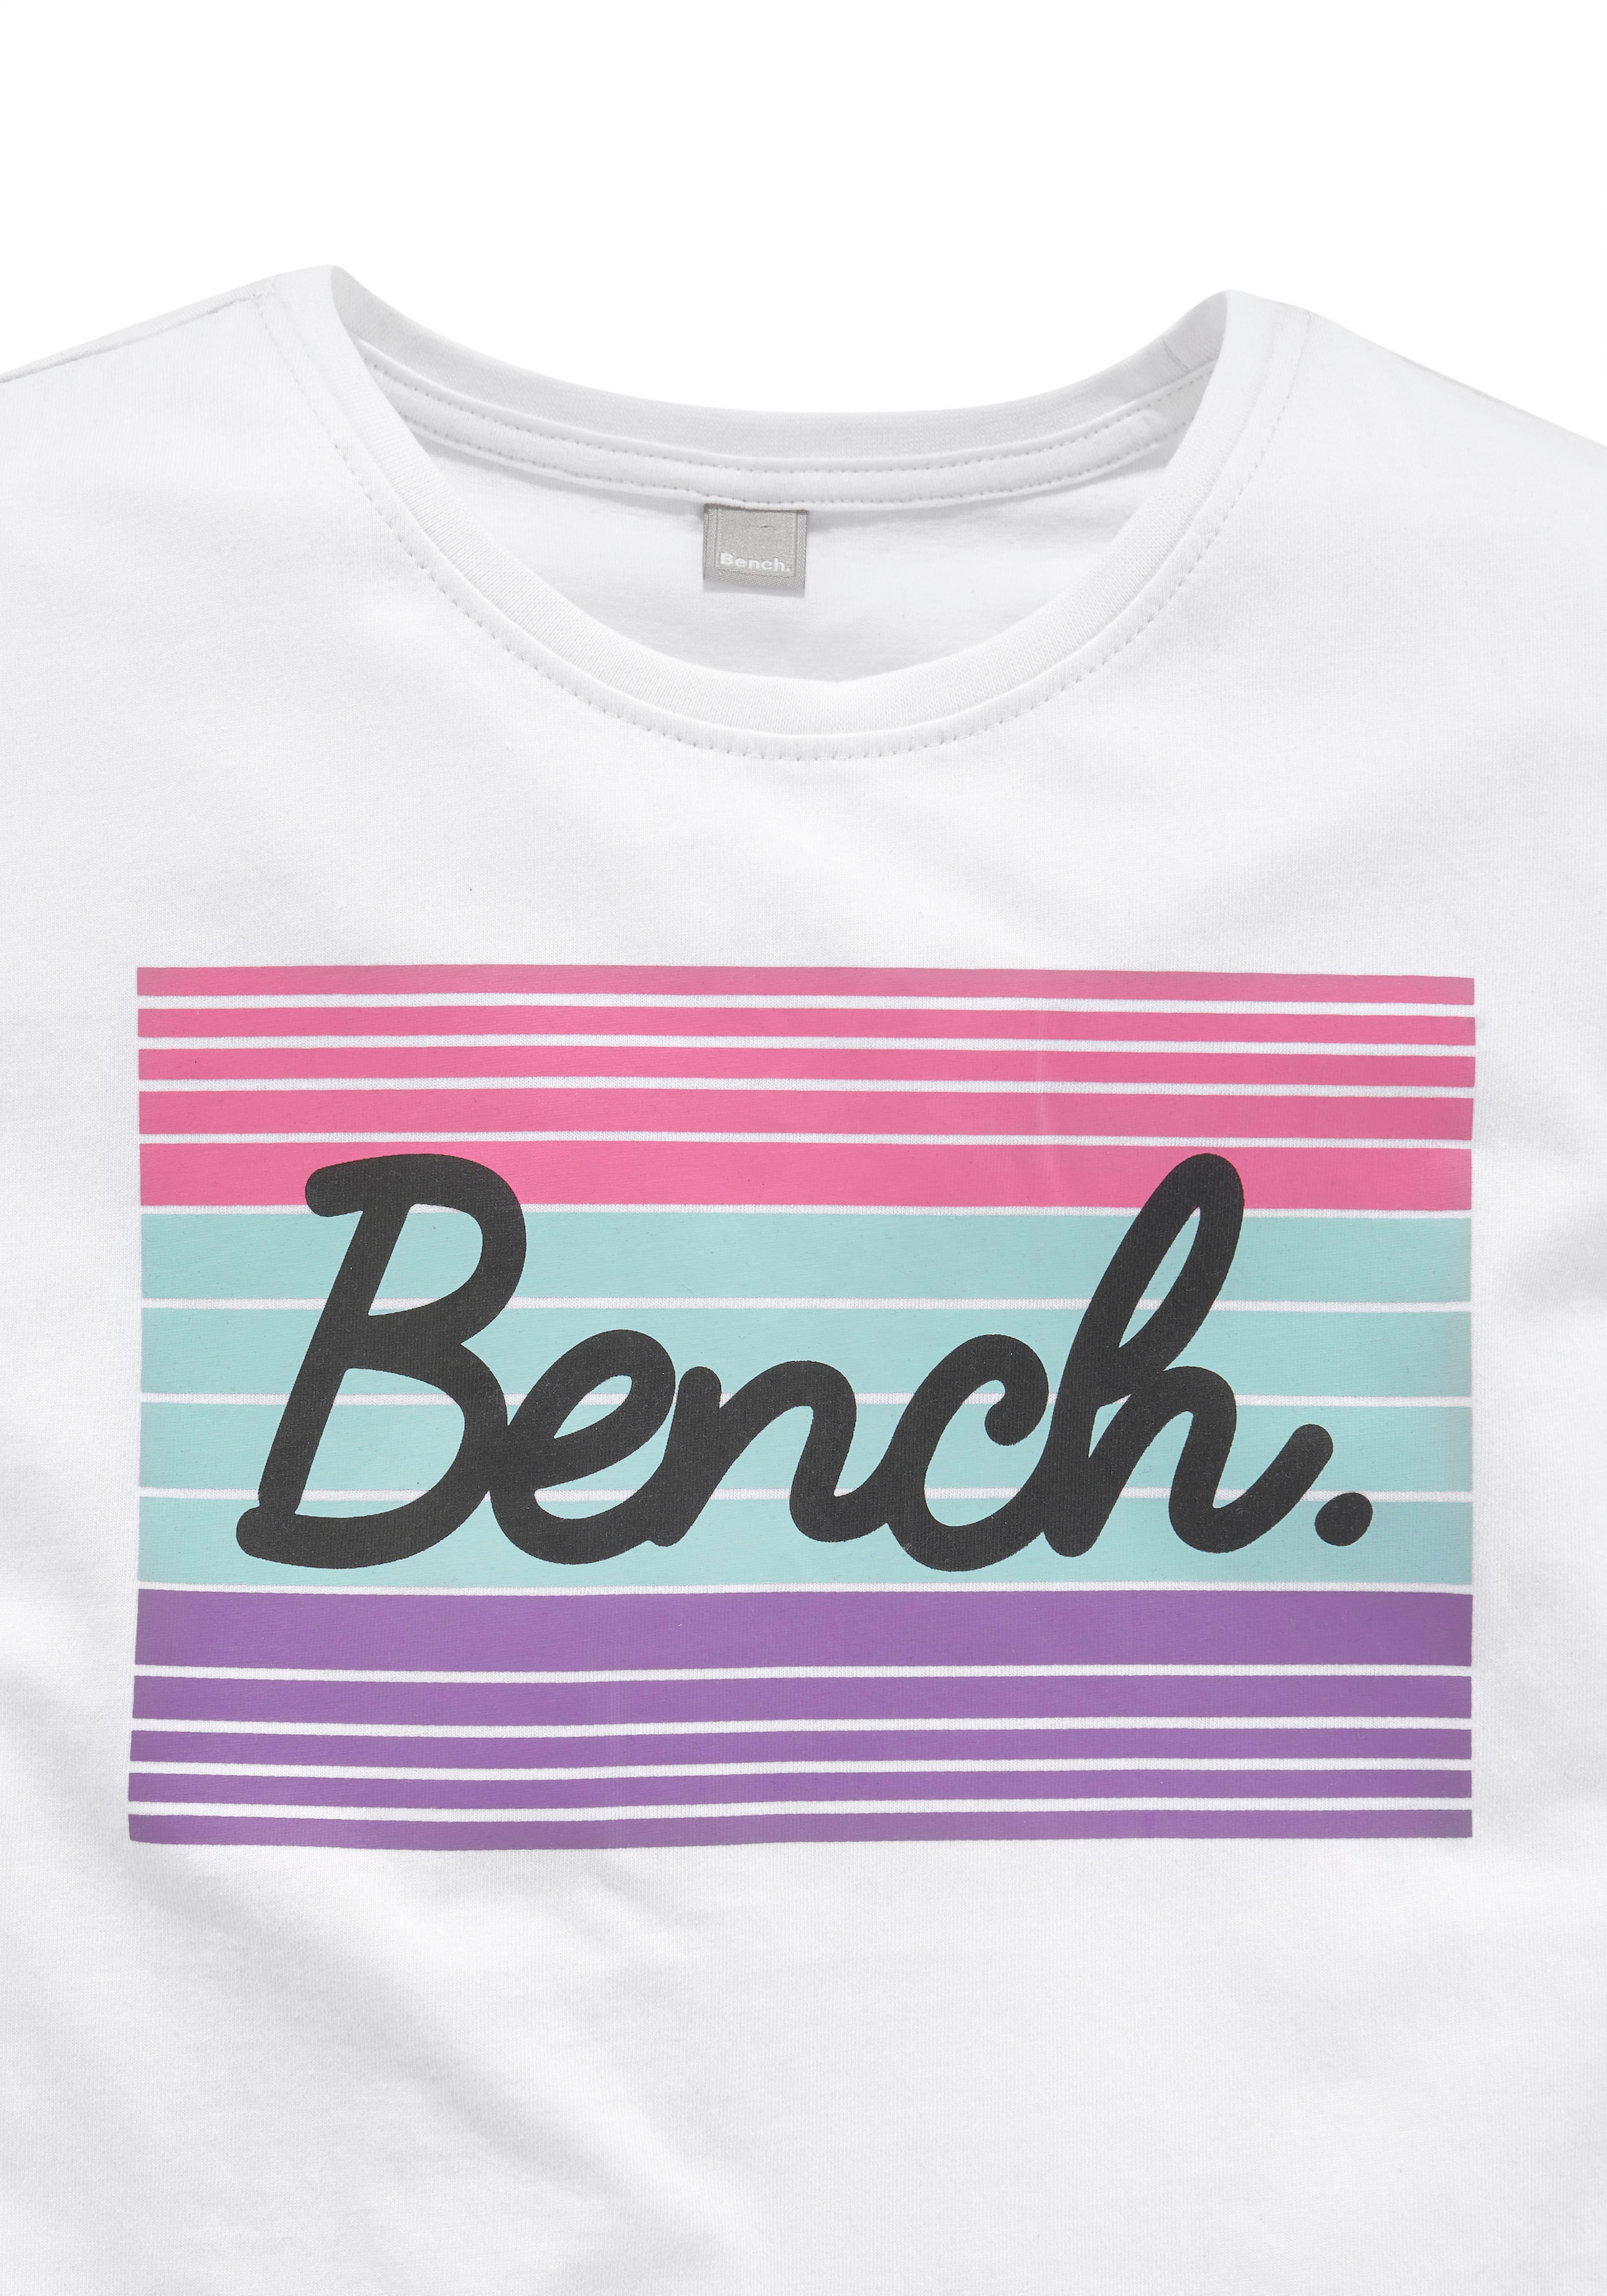 ✌ Bench. T-Shirt, grossem Acheter en Logodruck ligne mit